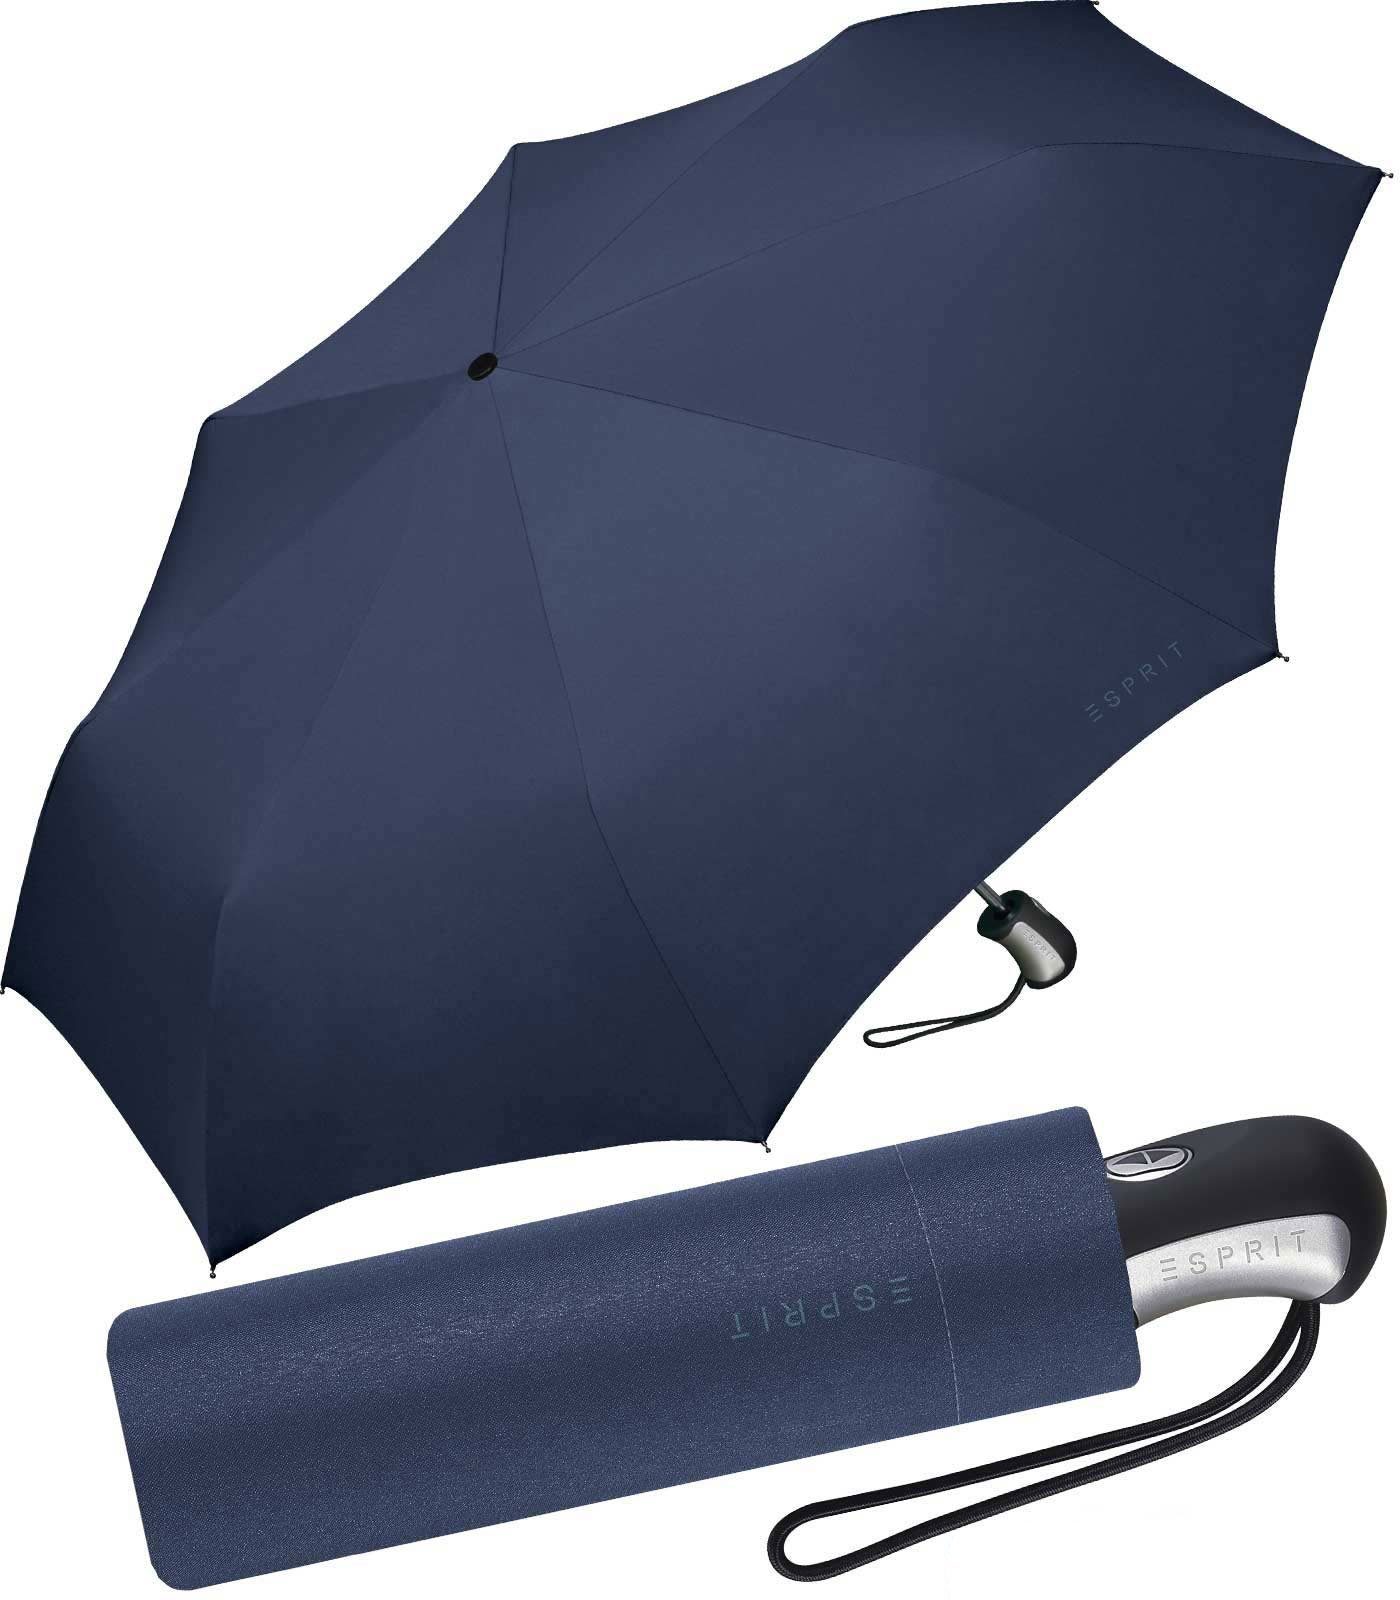 Esprit Taschenregenschirm schöner Schirm für Damen mit Auf-Zu Automatik, einfache Handhabung in klassischem Blau